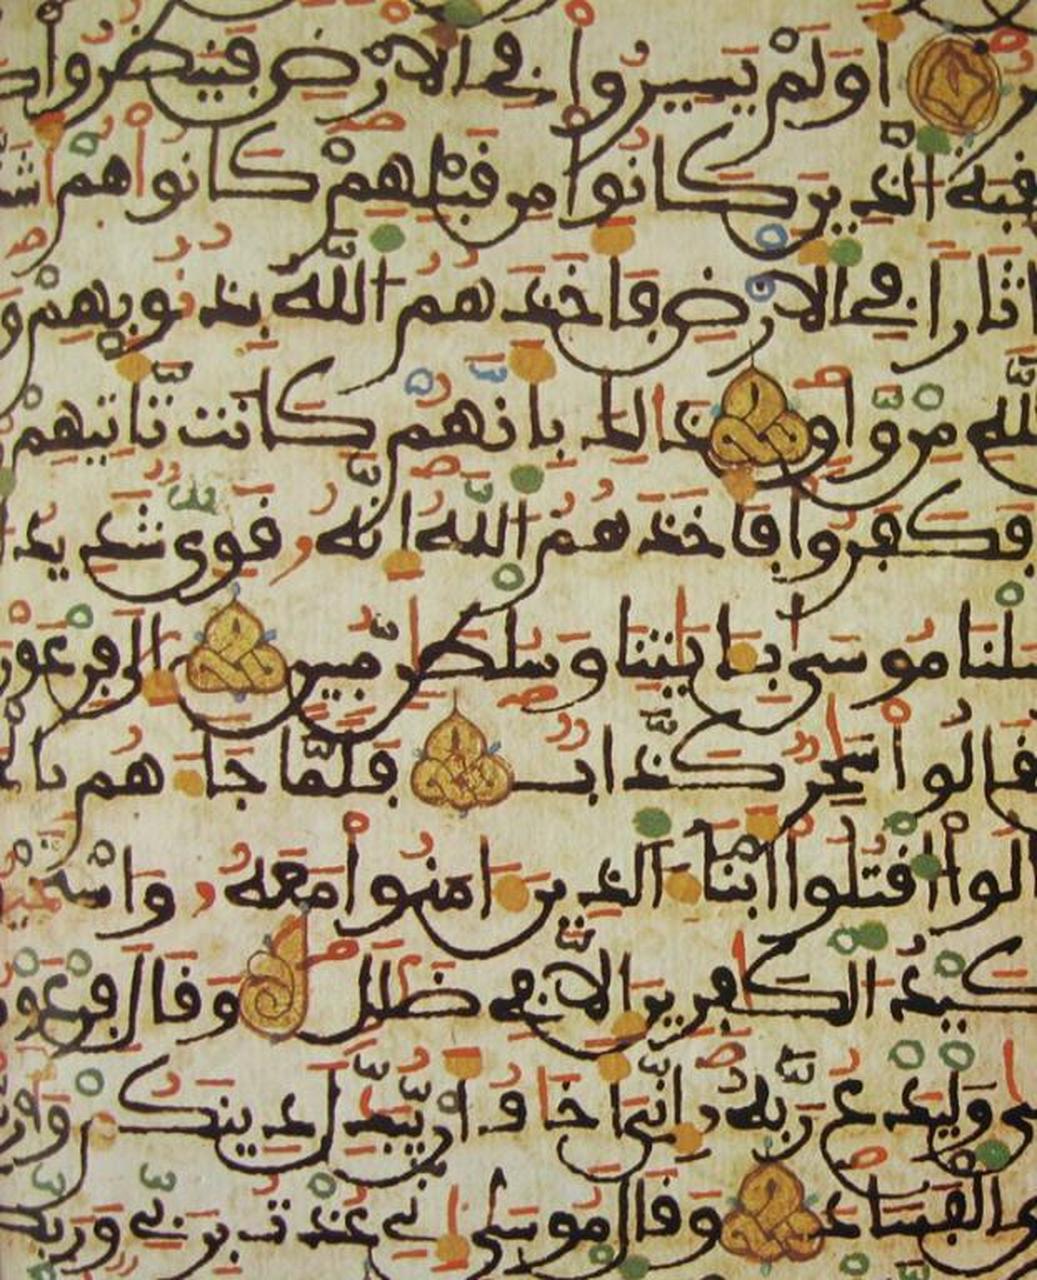 摩洛哥文字图片